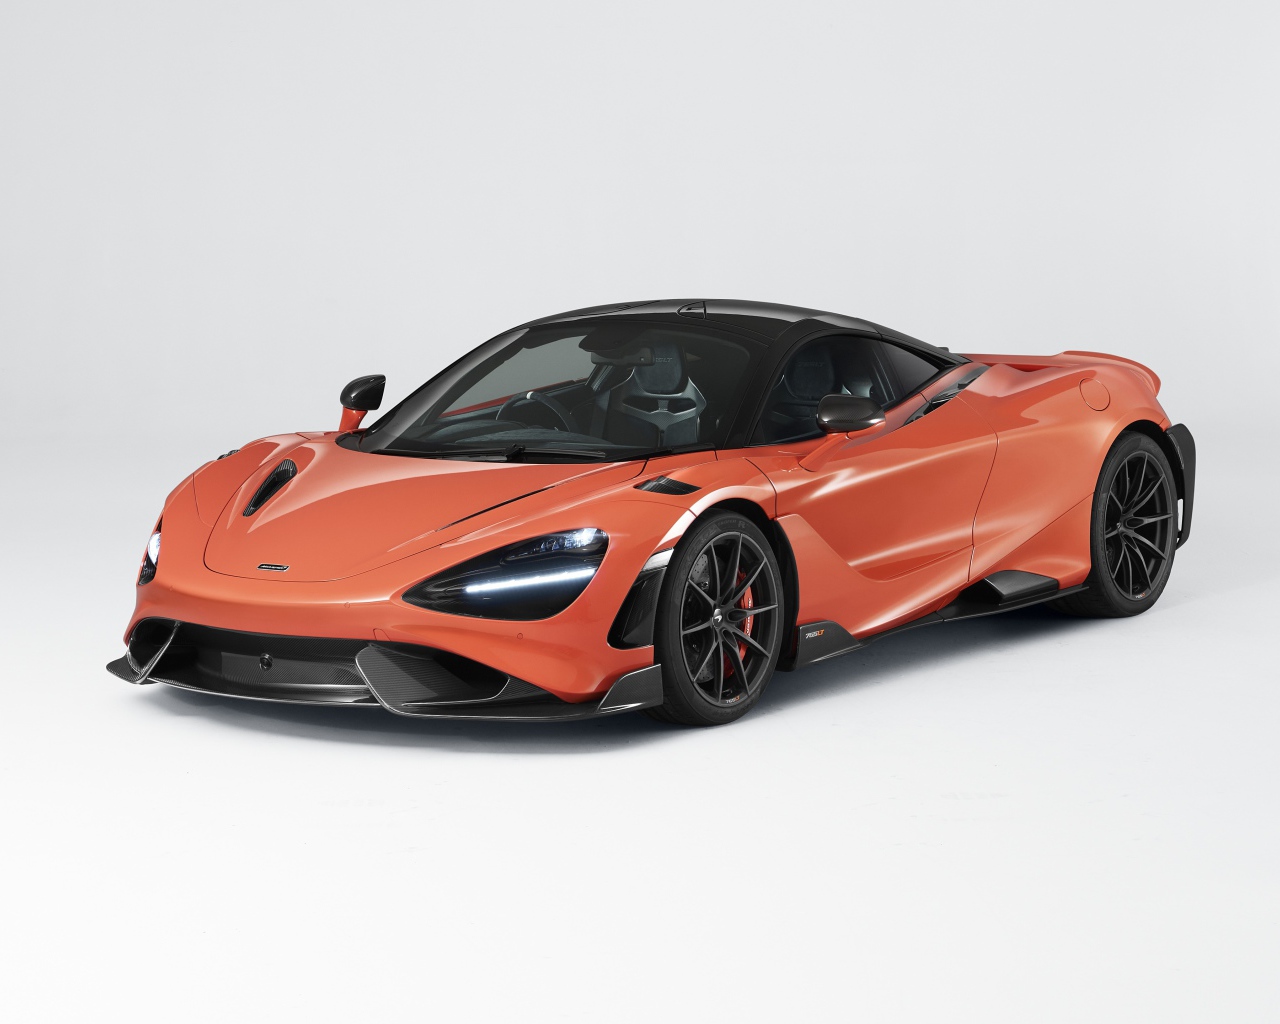 Автомобиль McLaren 765LT 2020 года на сером фоне